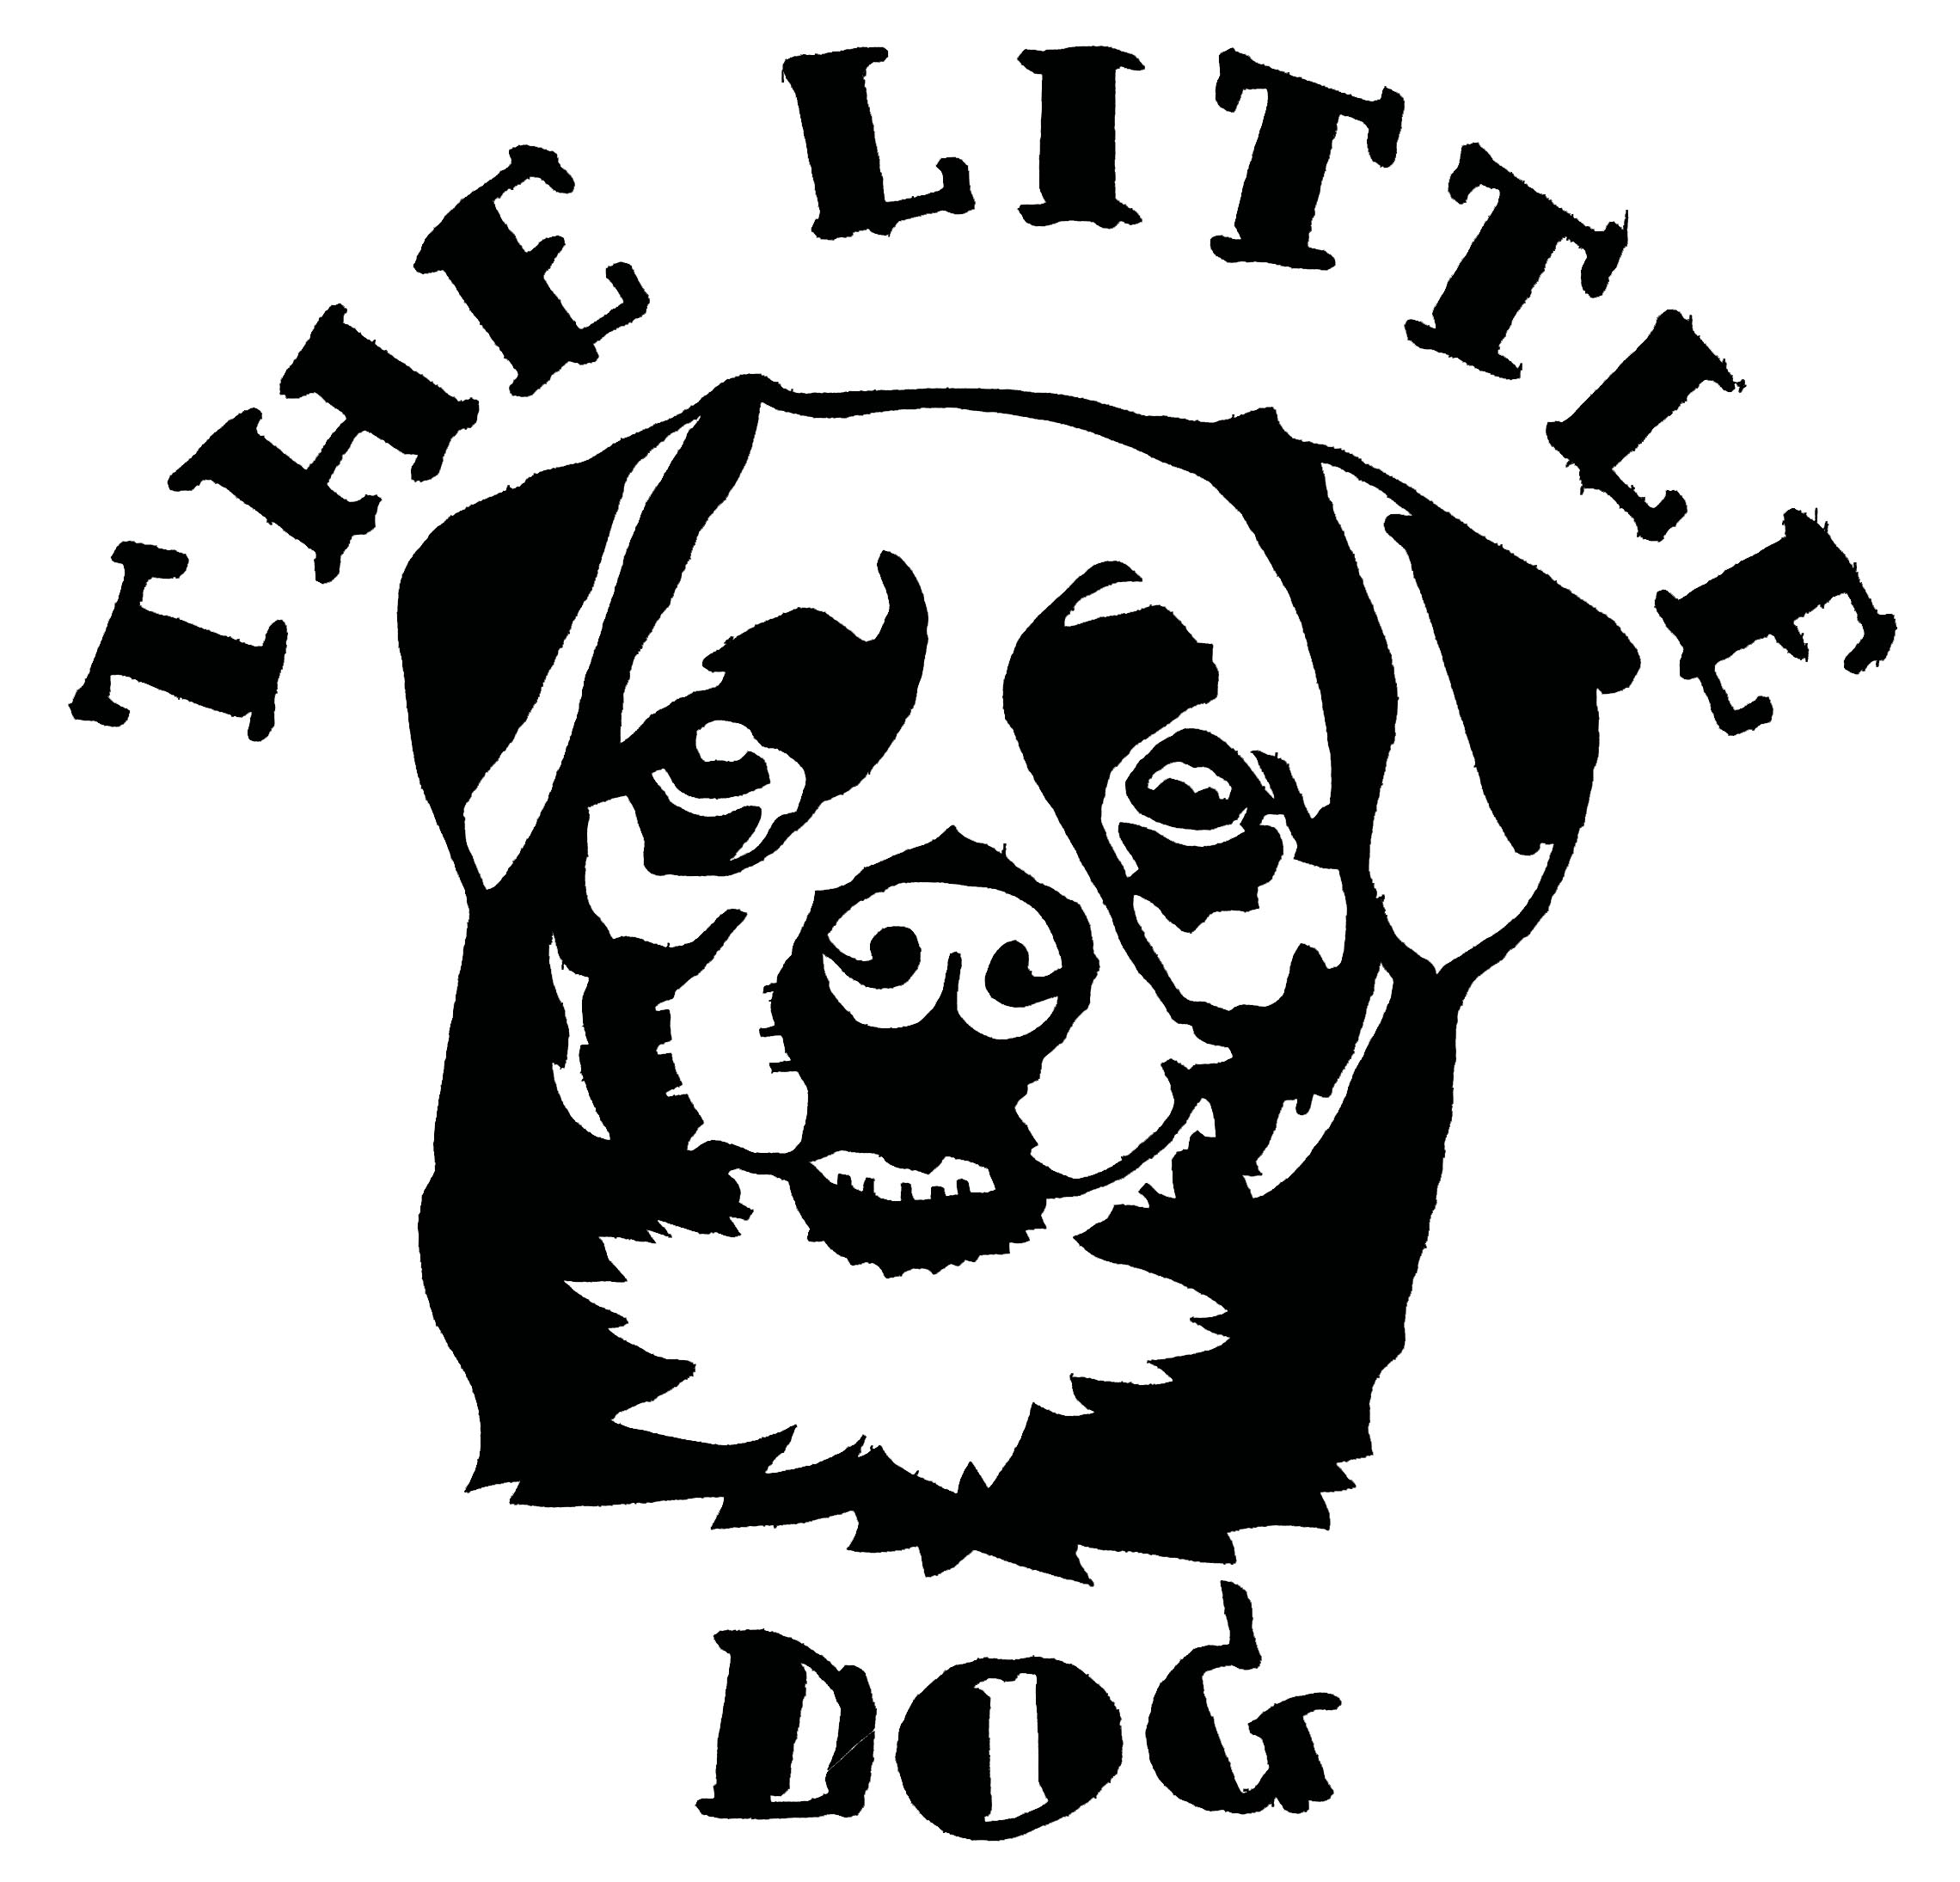 The Little Dog – Pipe, Tobacco and E-cigarettes